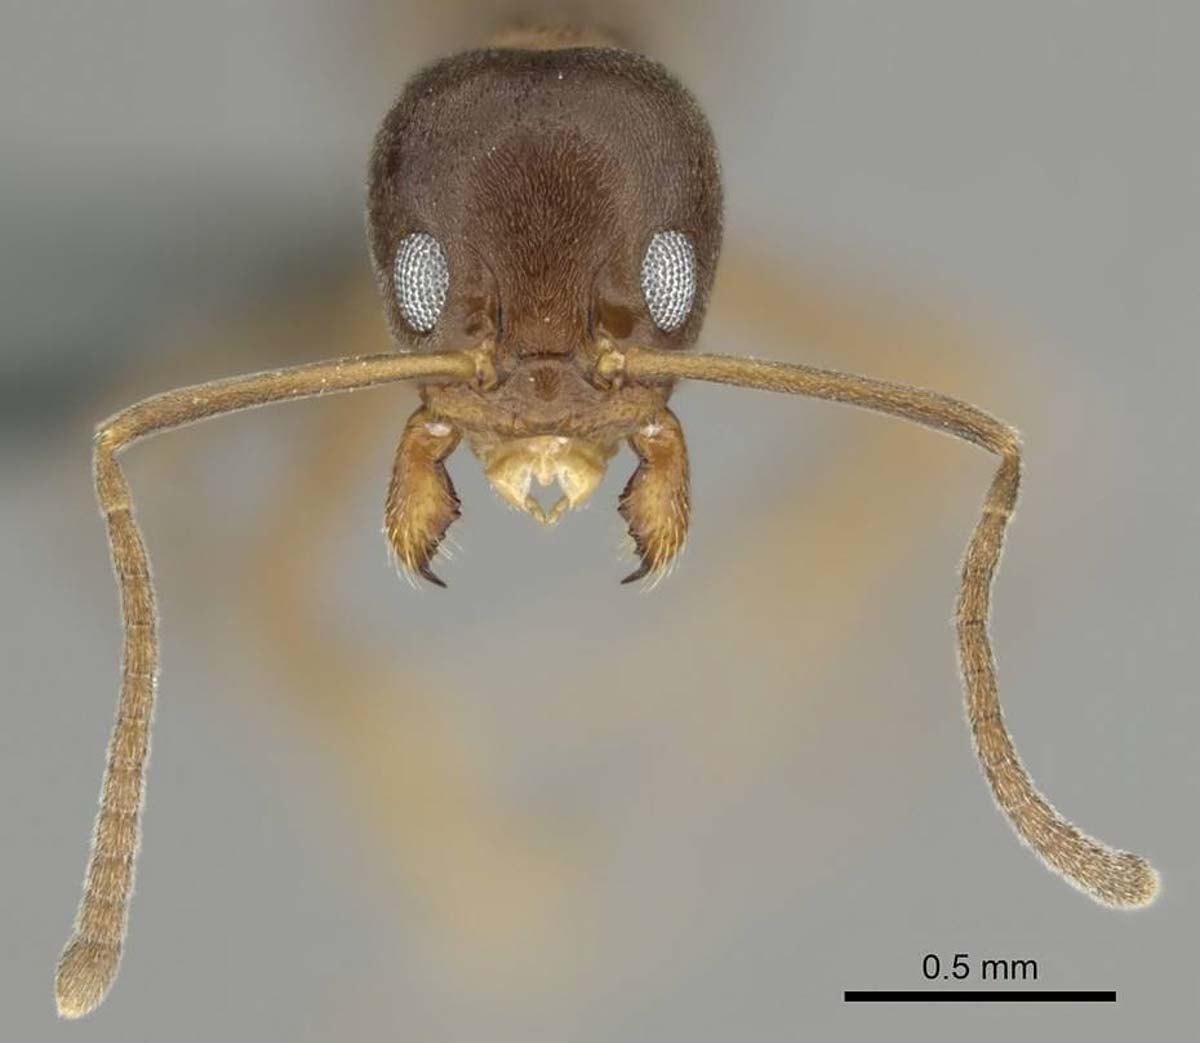 Argentine ant pest control